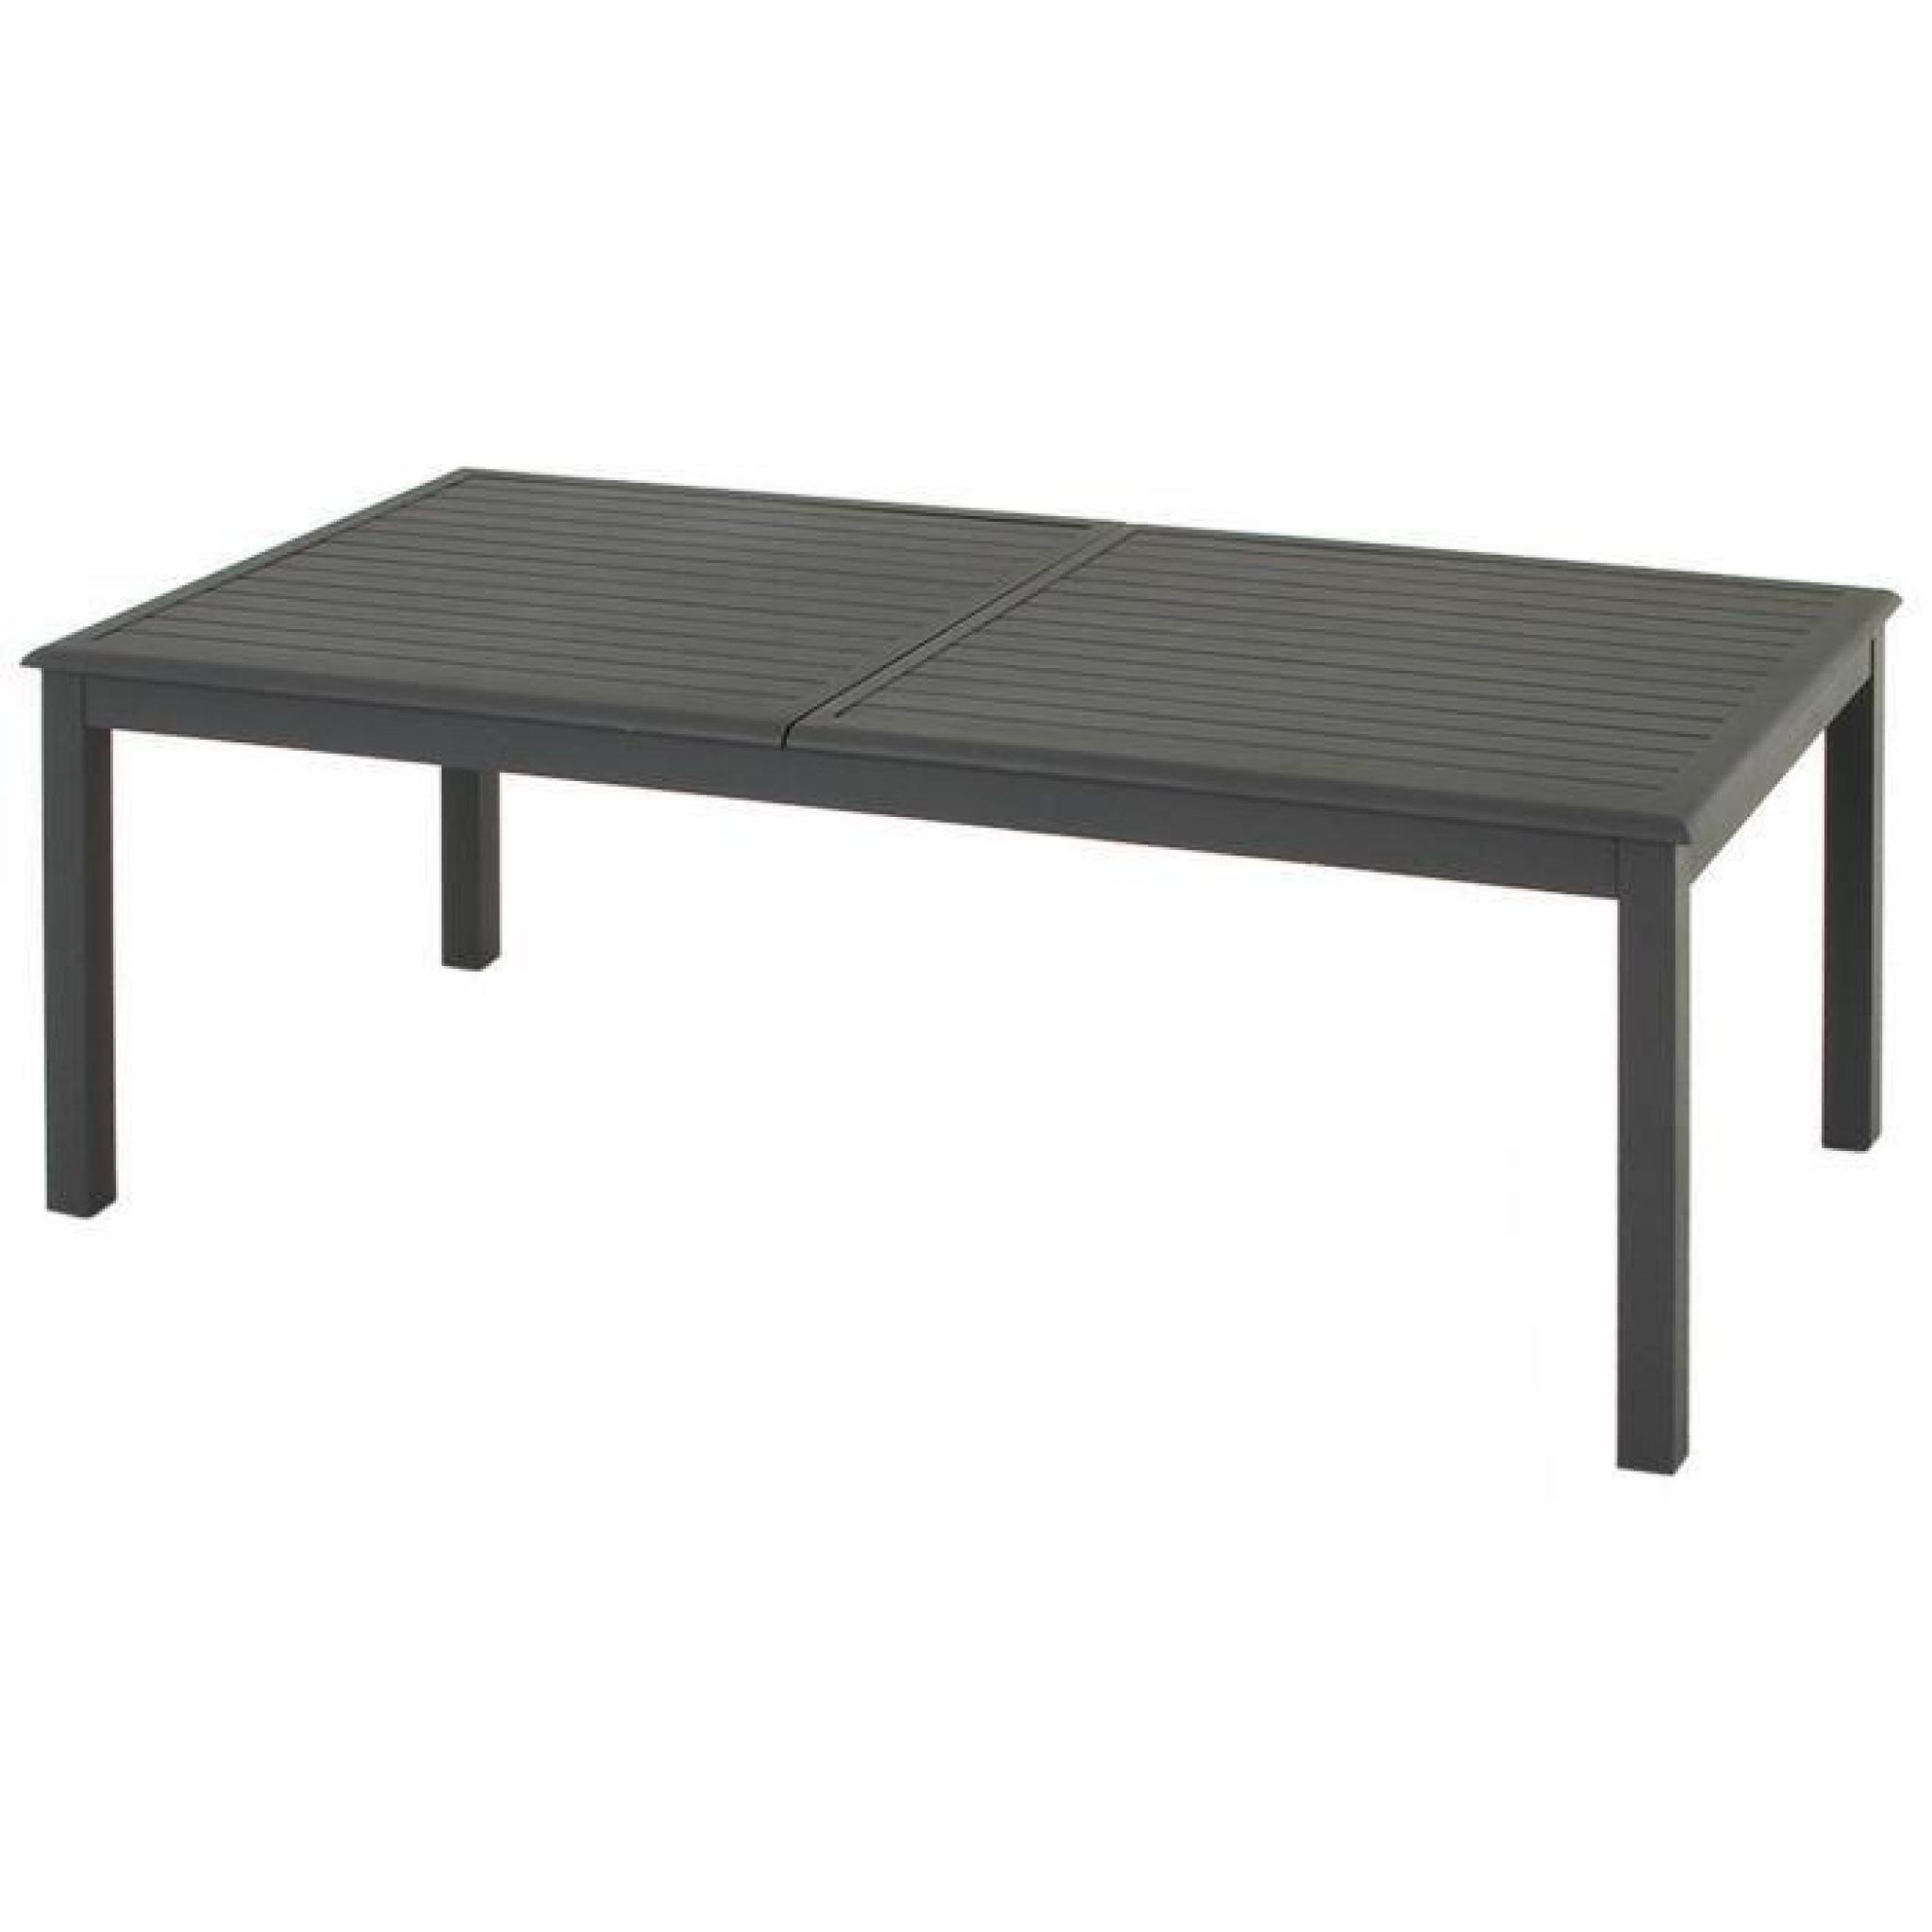 Table extensible en aluminium de couleur ardoise - Dim : L 200/300 x P 100 x H 75 cm   pas cher